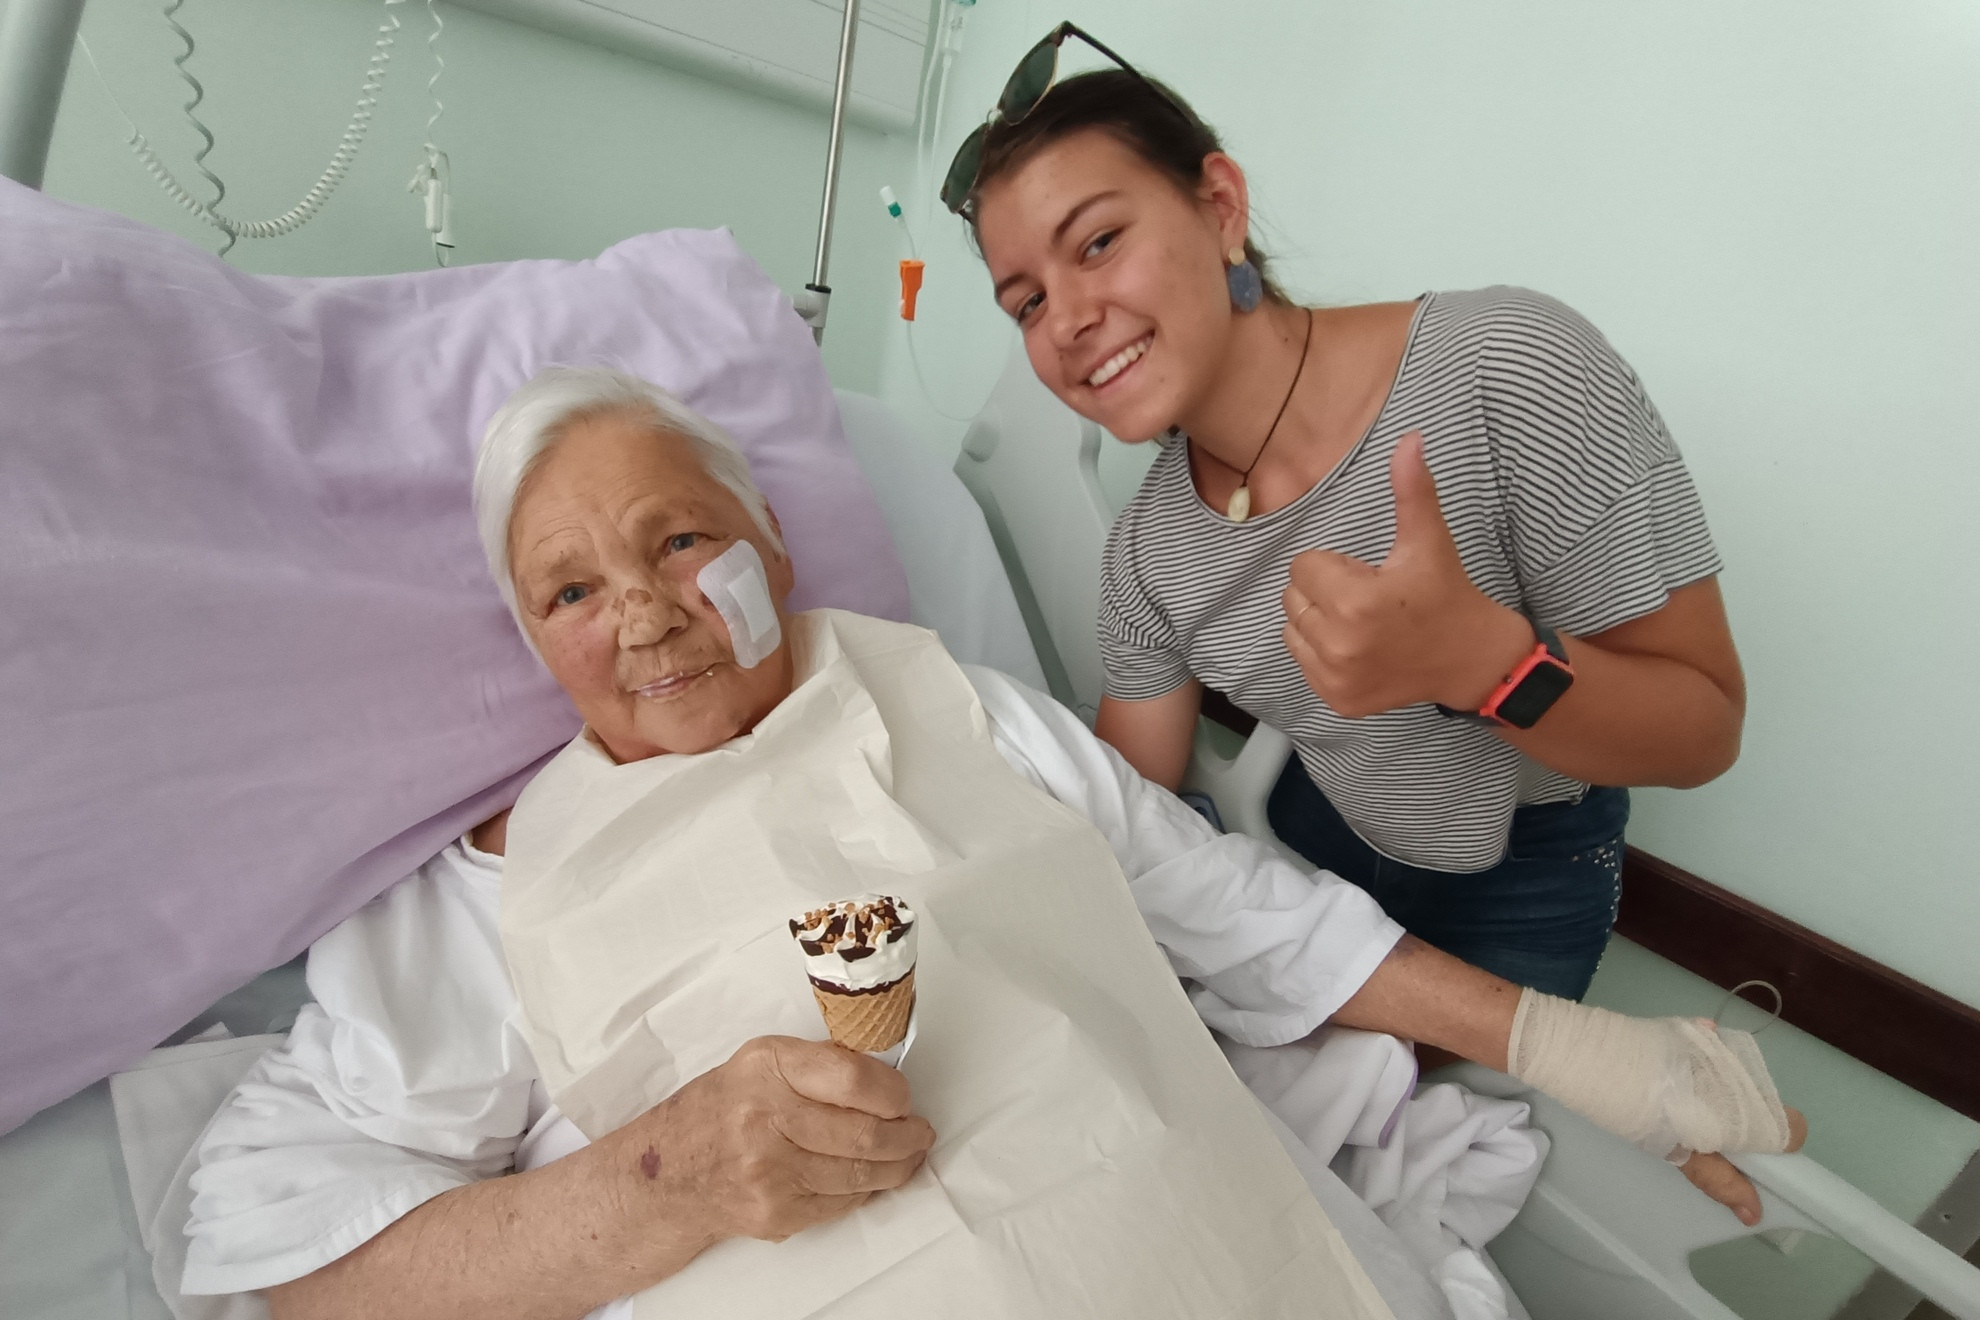 Trenutki v bolnici ob sladoledu in obisku vnukinje hitreje minejo